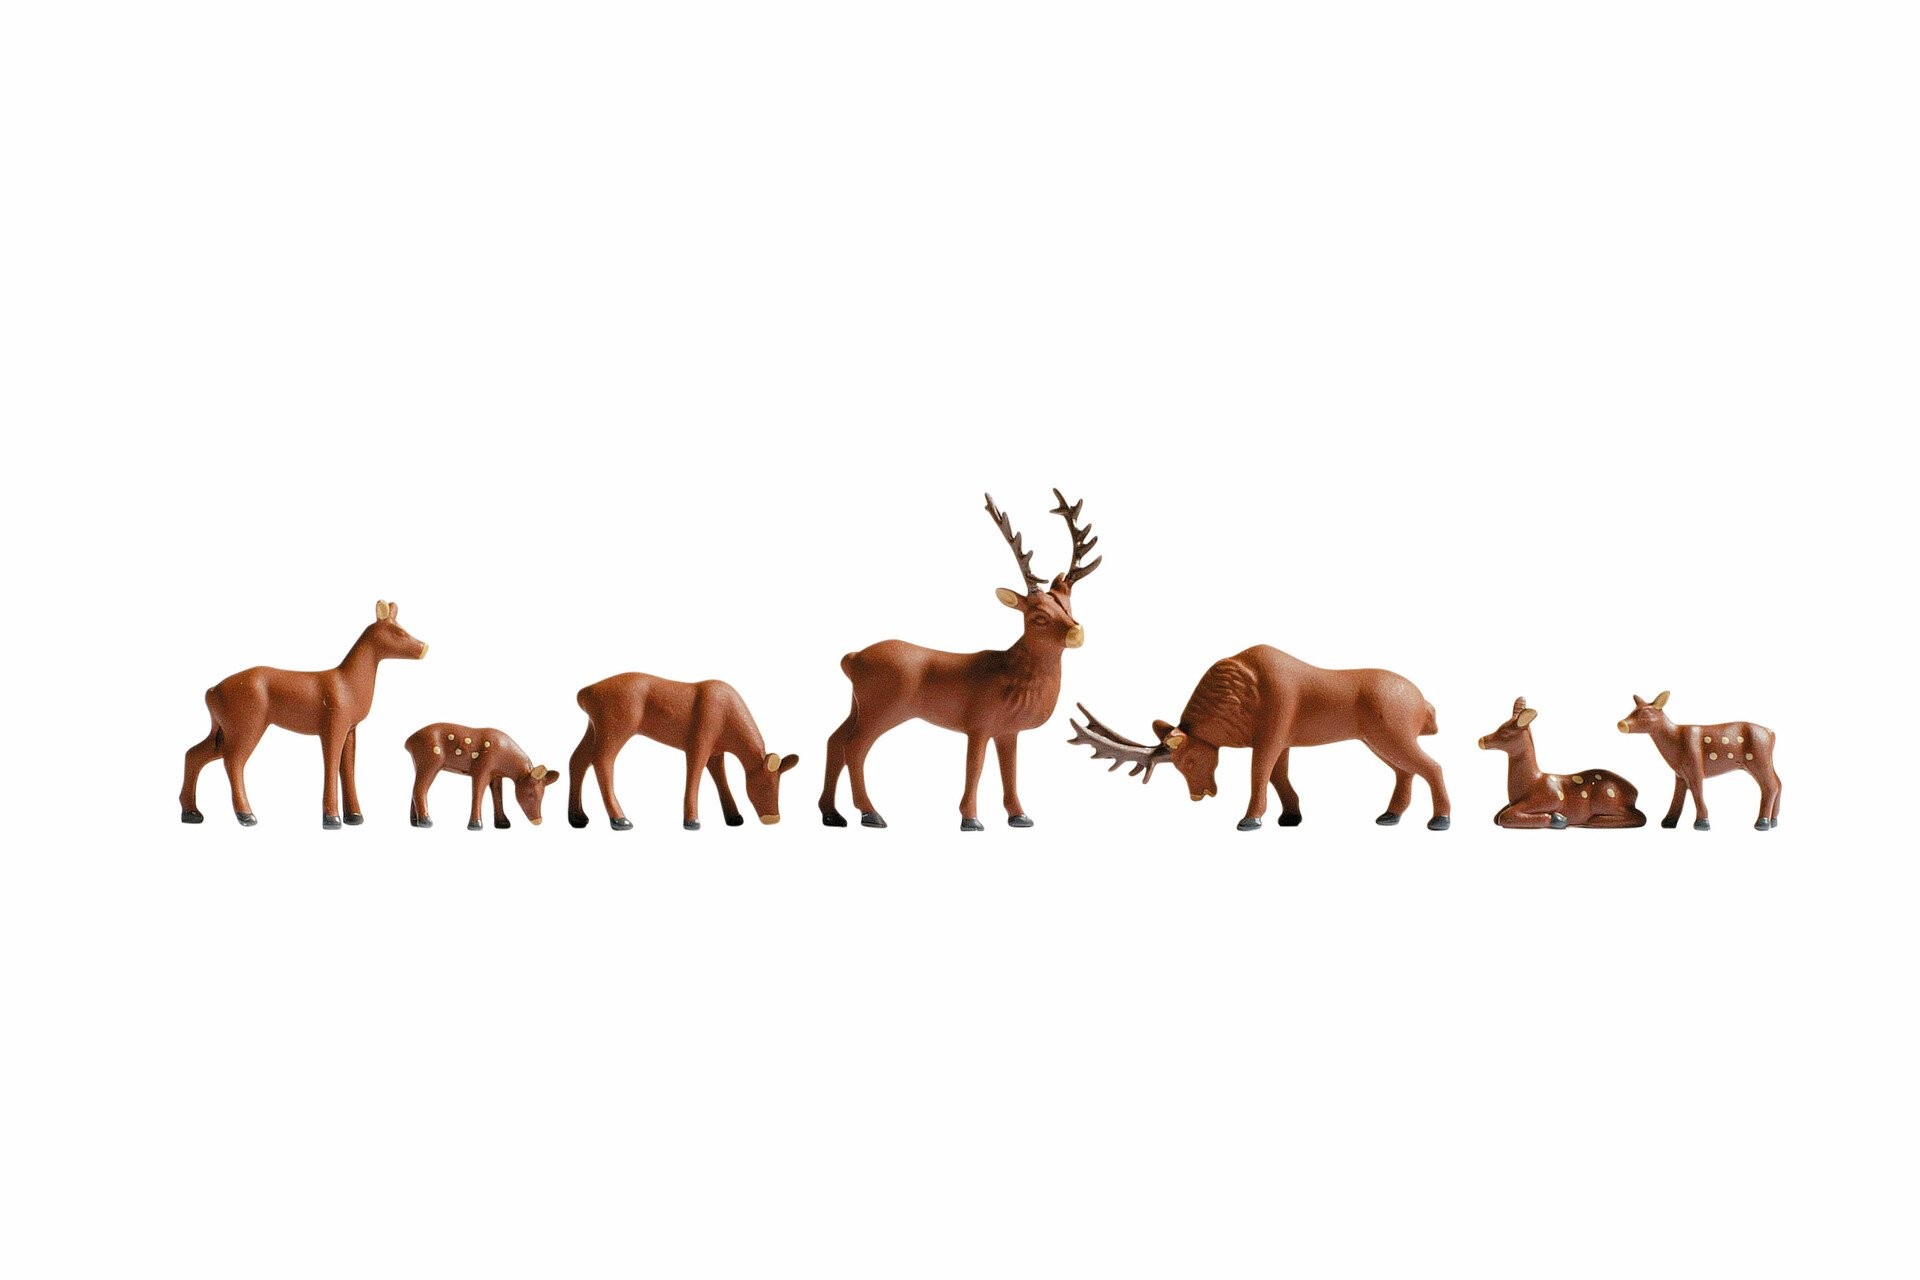 Noch - Veados (Deers) - Escala HO: 15730